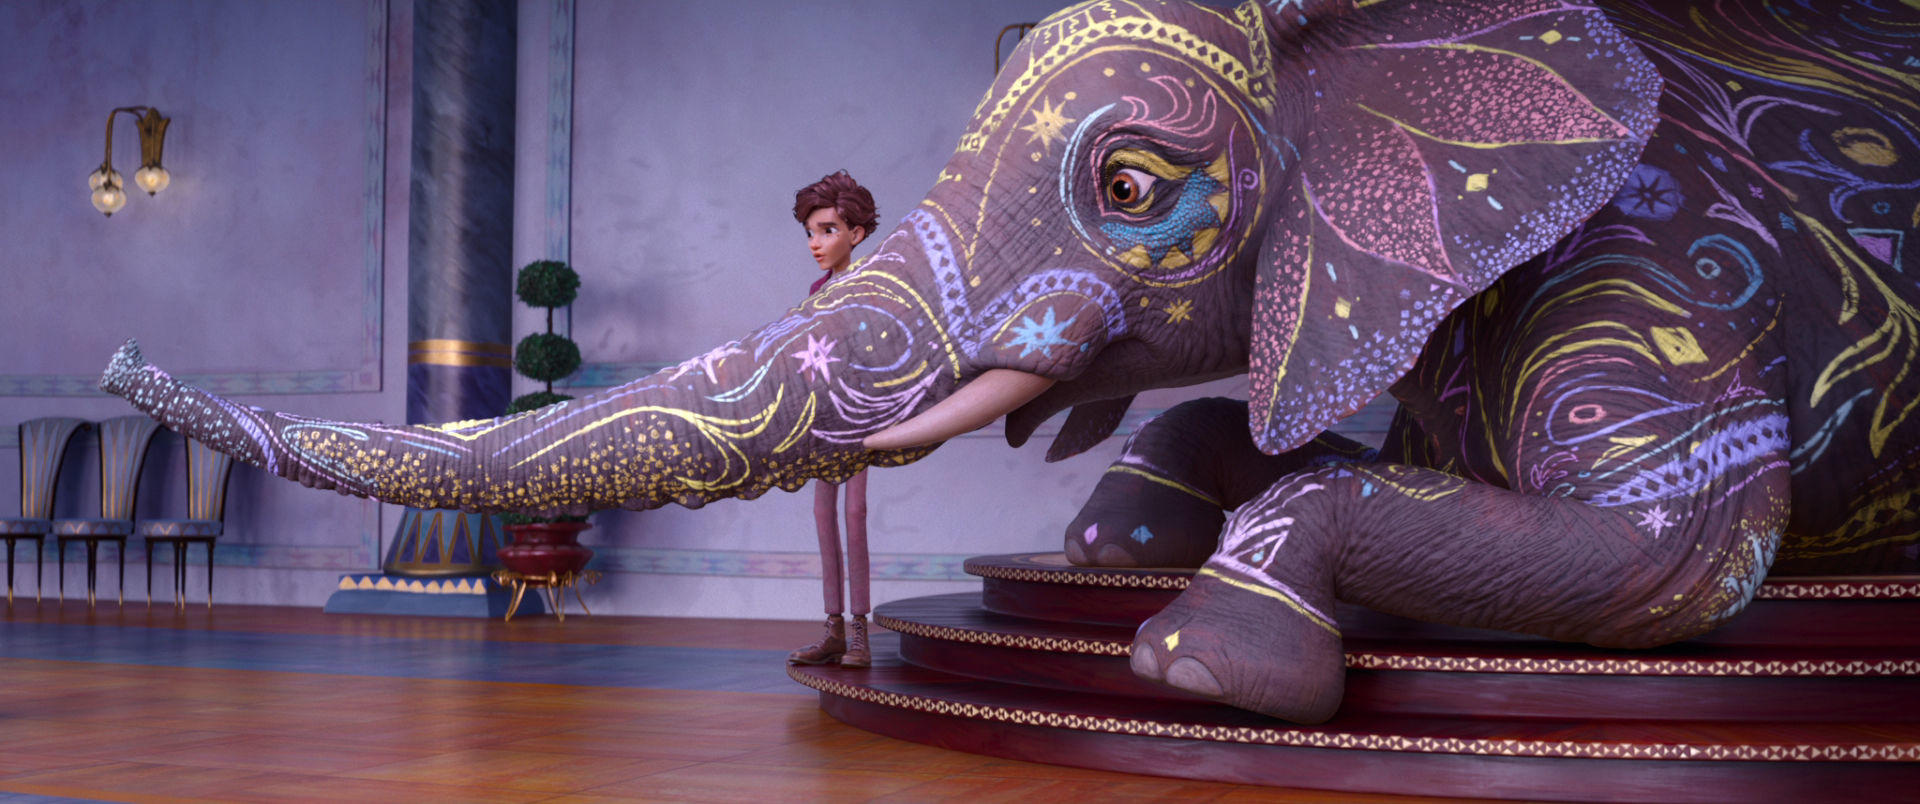 Grâce à « L’Éléphante du magicien », on ne s’ennuie pas et sa douceur visuelle fera du bien à toute la famille. Netflix